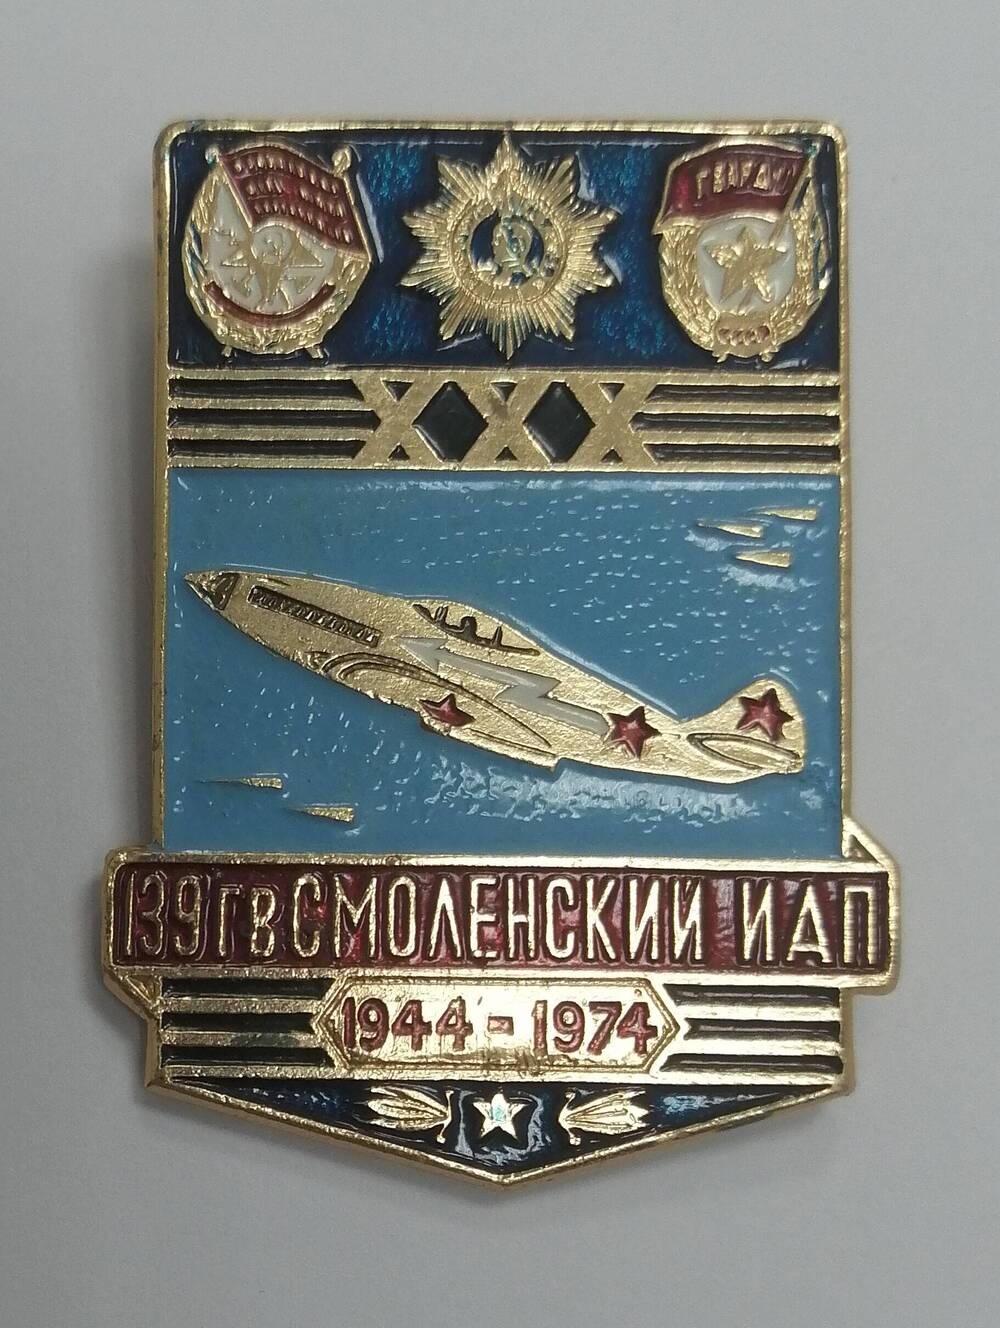 Значок ХХХ 139 ГВ Смоленский ИАП 1944-1974